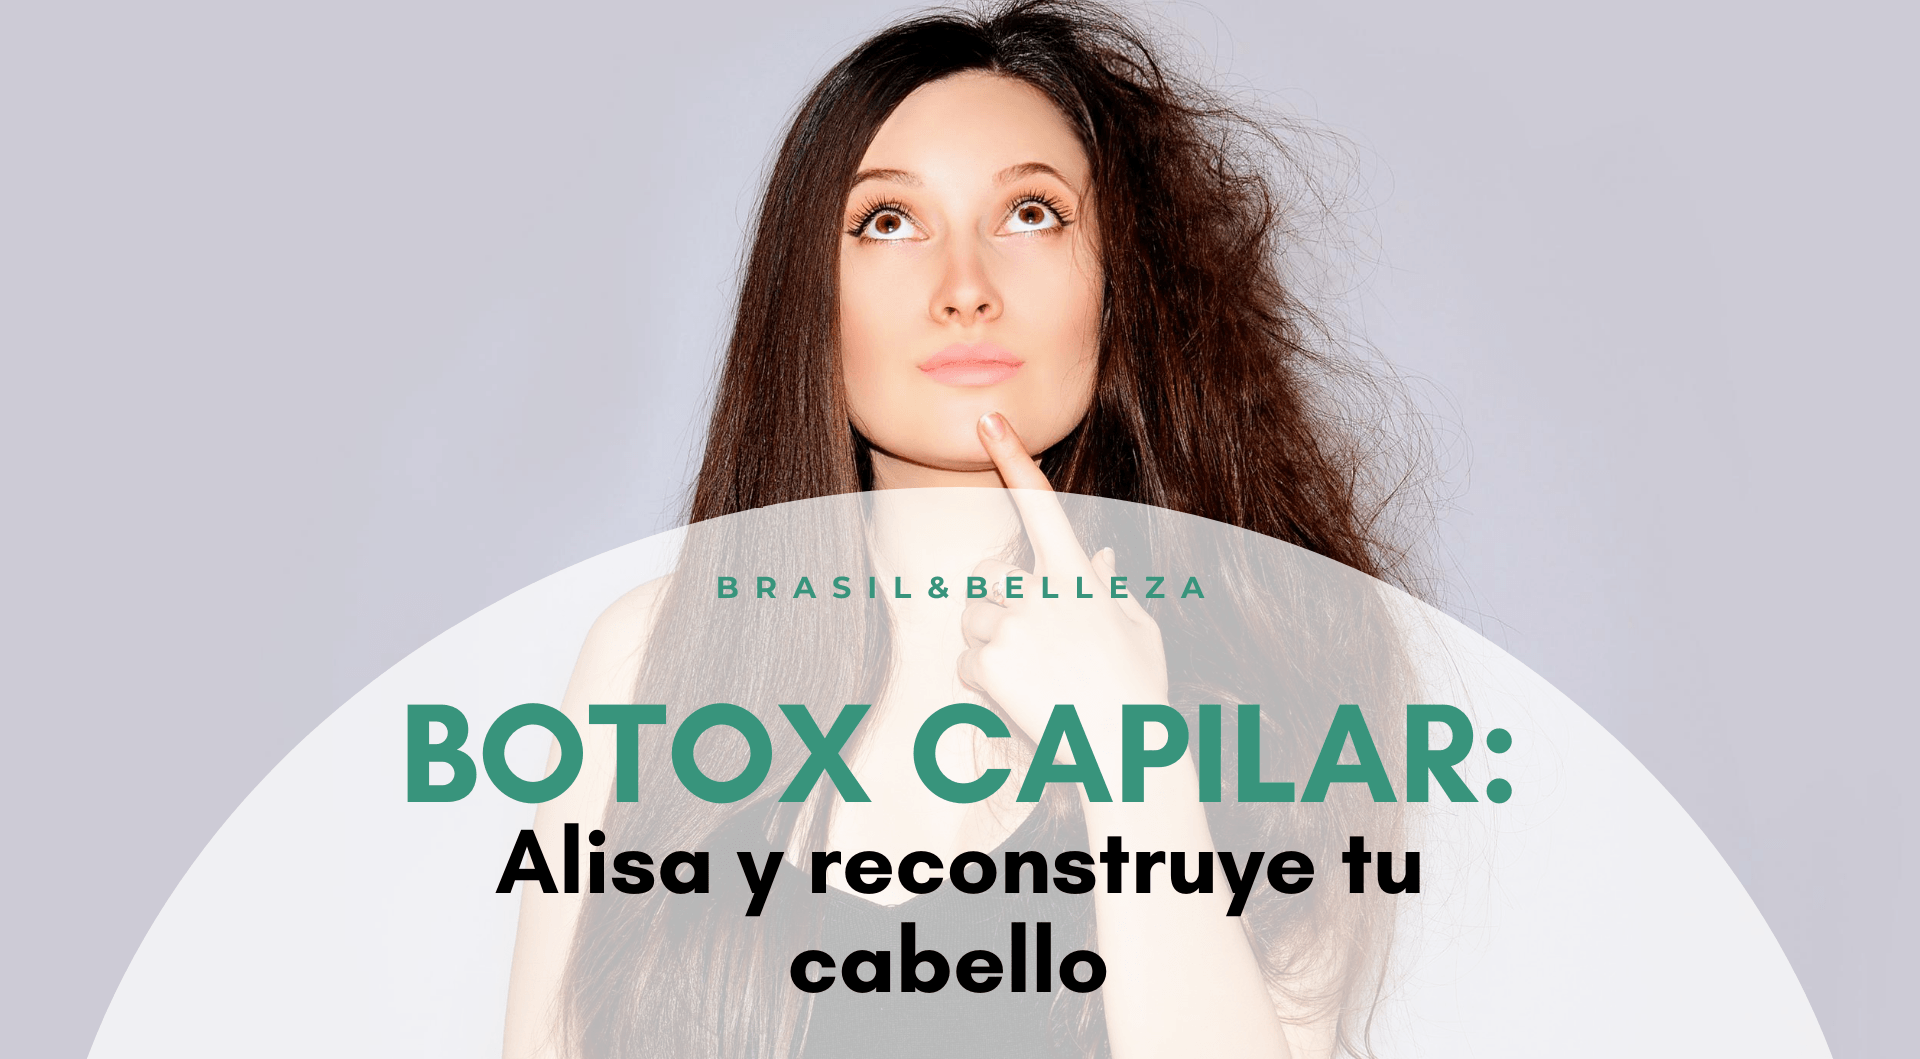 El Botox Capilar: alisa y reconstruye tu cabello